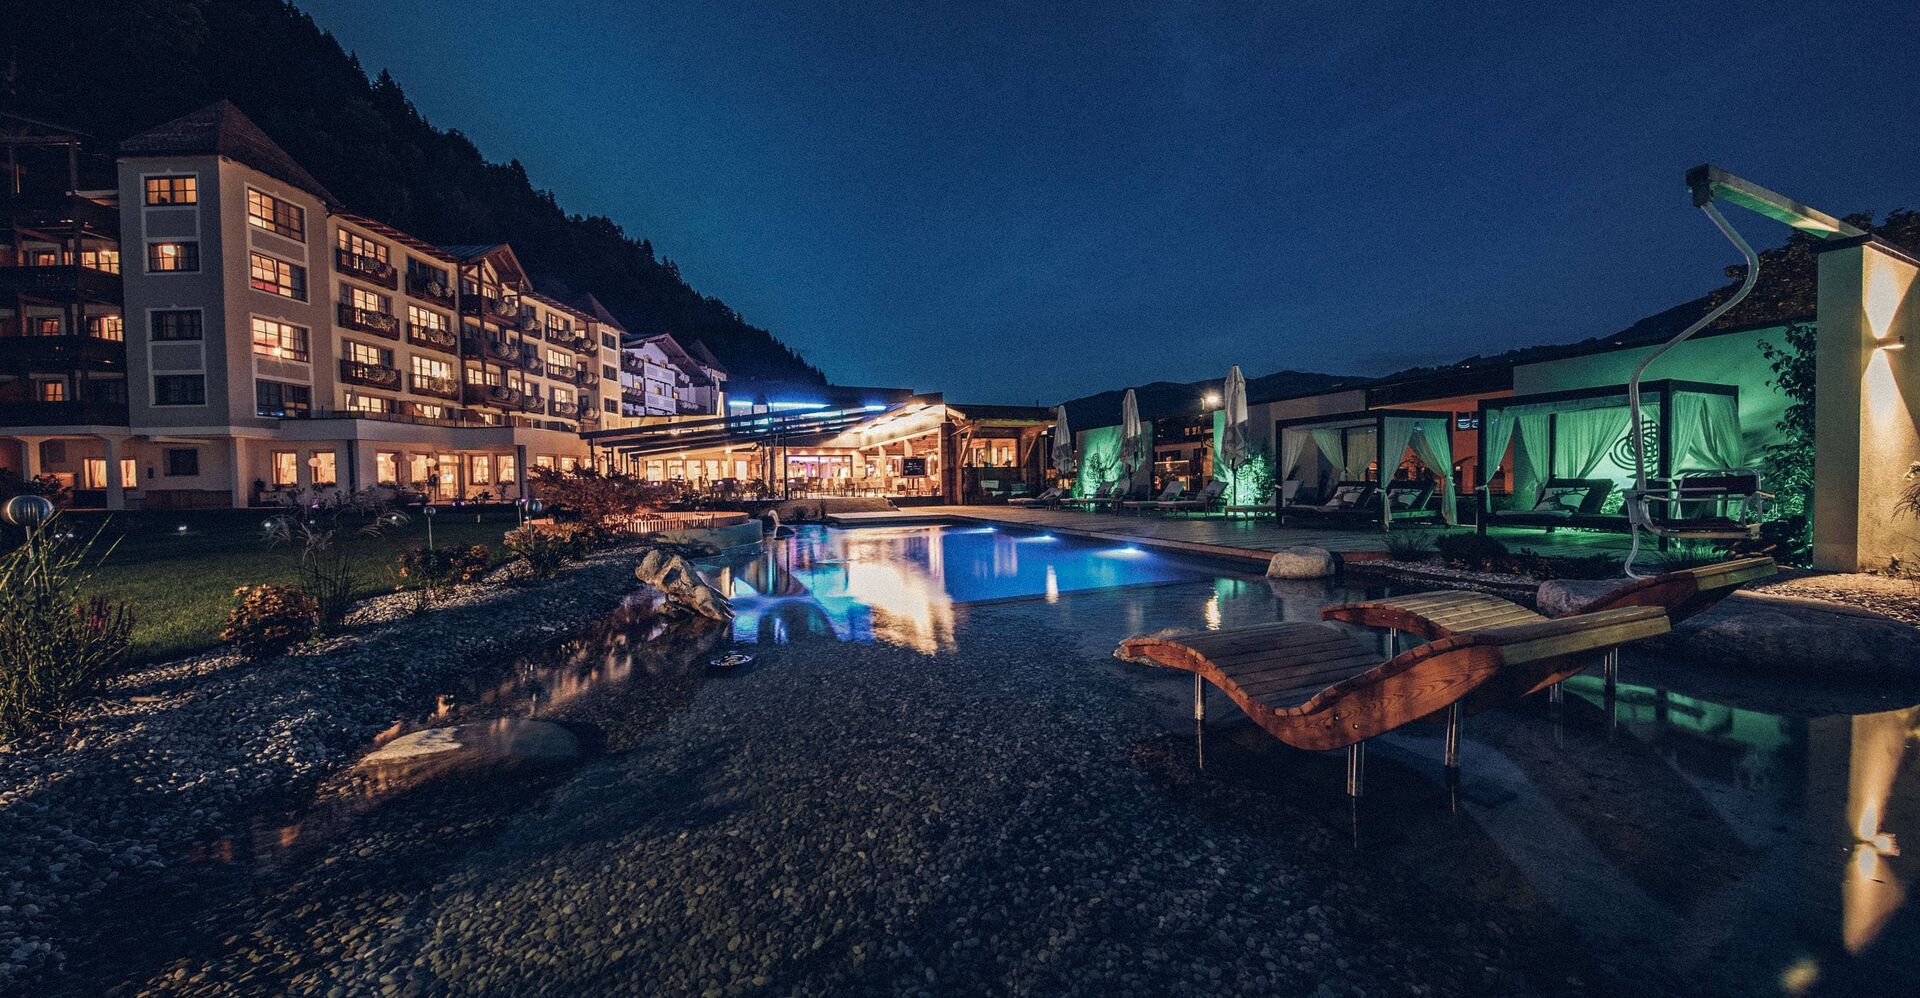 Hotel Alpenblick Aussenanlage bei Nacht Familienhotel Salzburg 8add0dbd